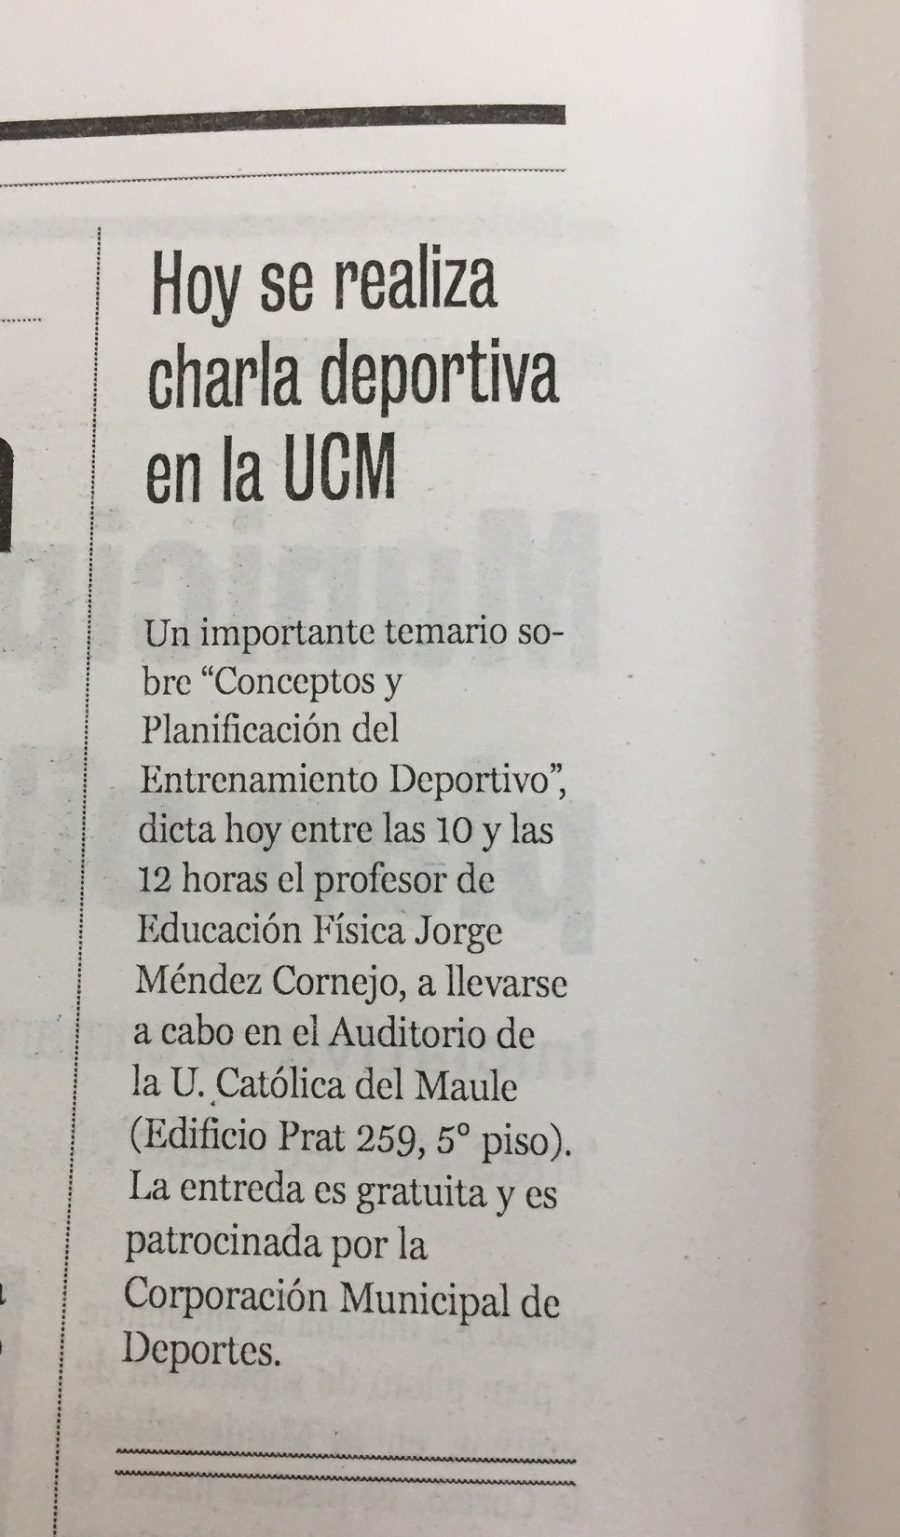 27 de mayo en Diario La Prensa: “Hoy se realiza charla deportiva en la UCM”